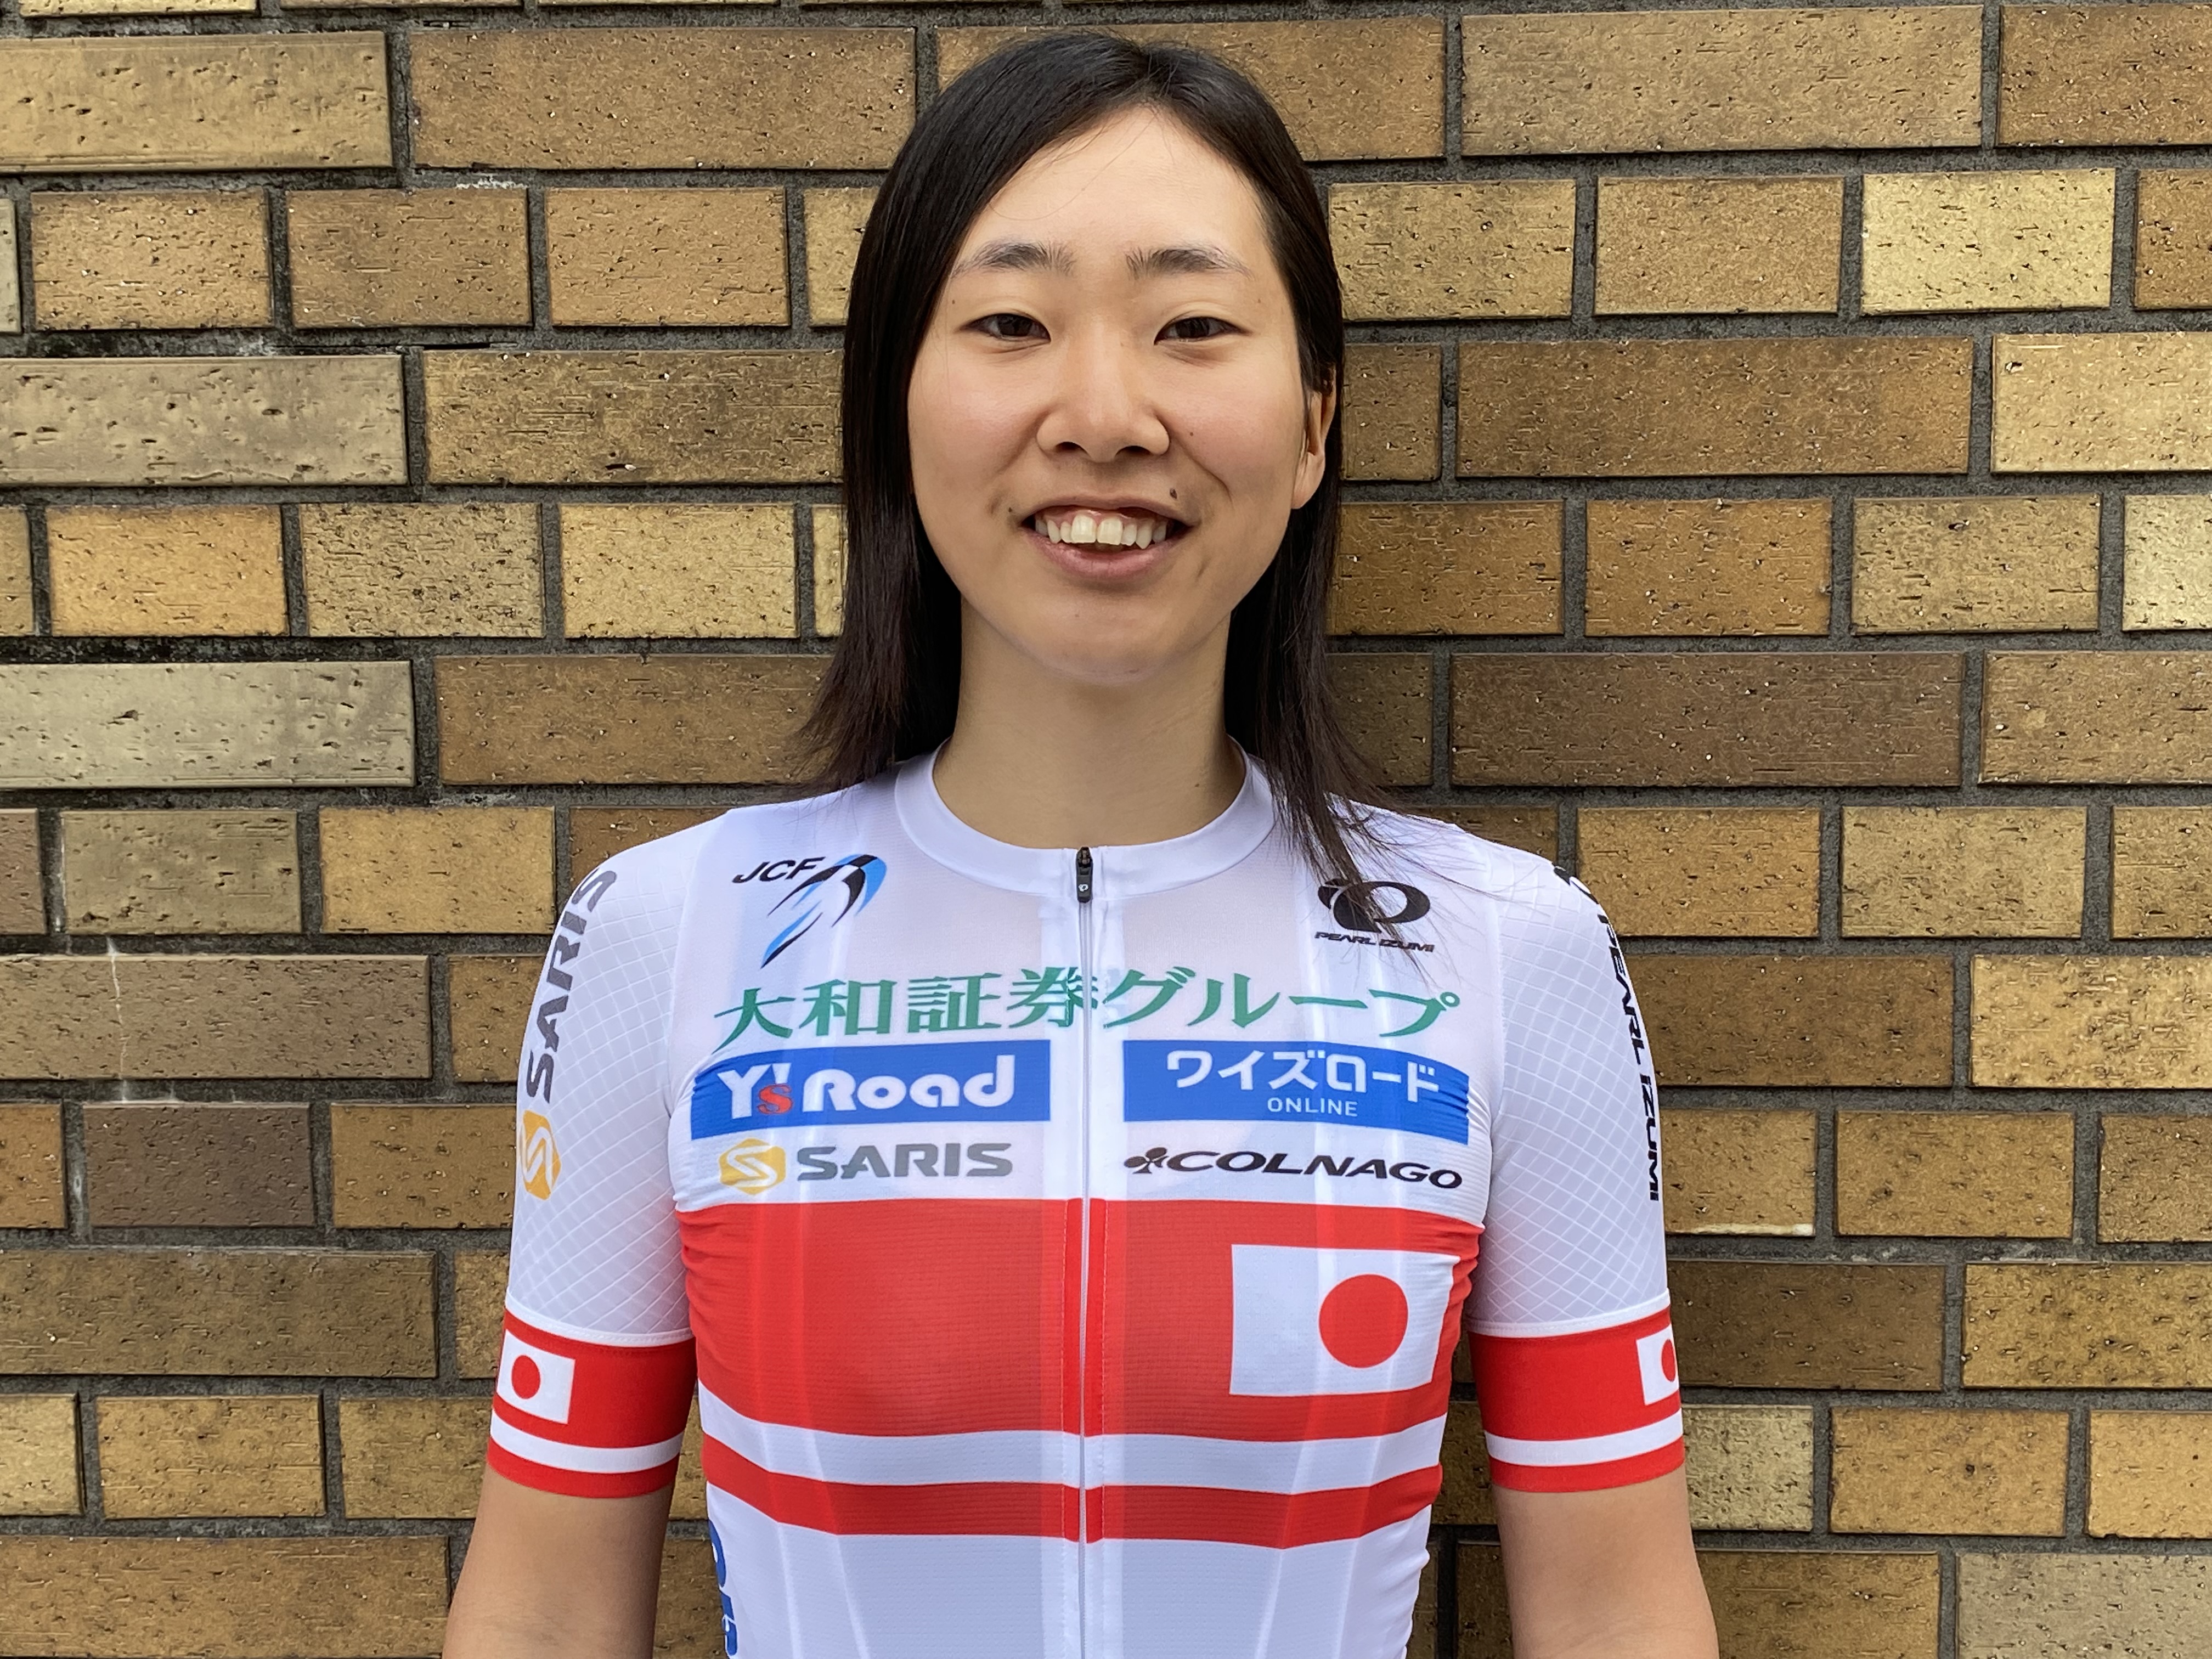 全日本チャンピオンで実業団チーム「Y’s Road」所属 植竹海貴選手 今年の自転車競技におけるレース活動の抱負を発表 ～全日本選手権連覇と海外のレースへのチャレンジも目標～